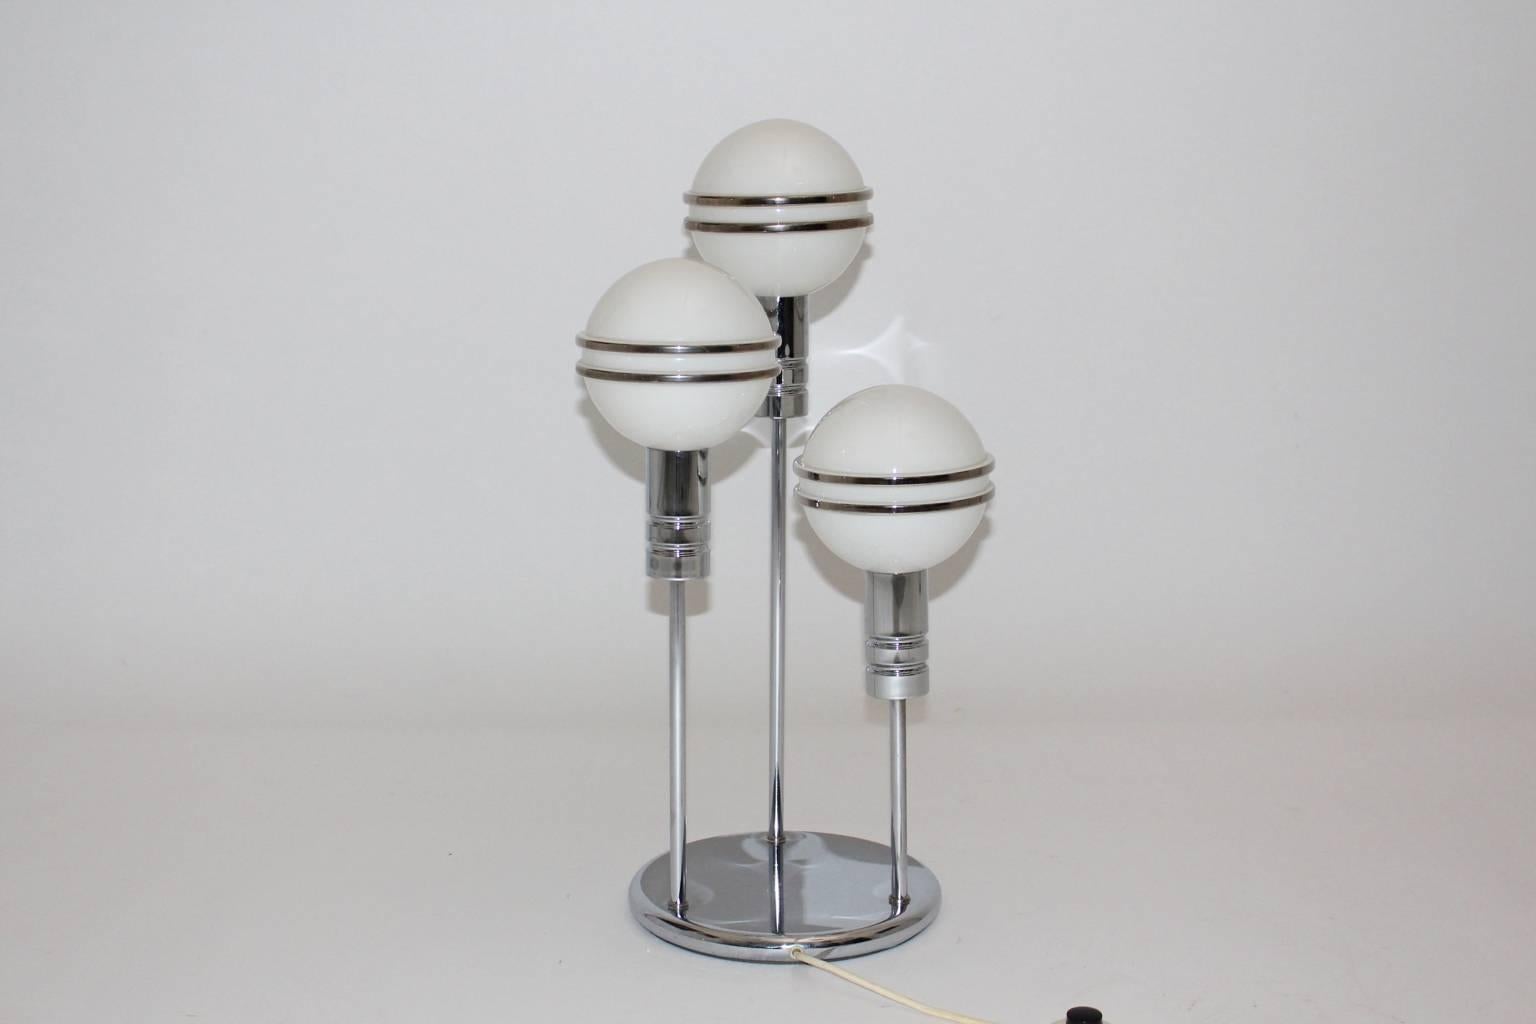 La lampe de table épurée de l'époque Art déco est fabriquée en acier chromé et comporte trois globes en verre de lait blanc.
Chaque globe est décoré de doublures.

La lampe de table s'allume avec trois ampoules E 14 et dispose d'un interrupteur